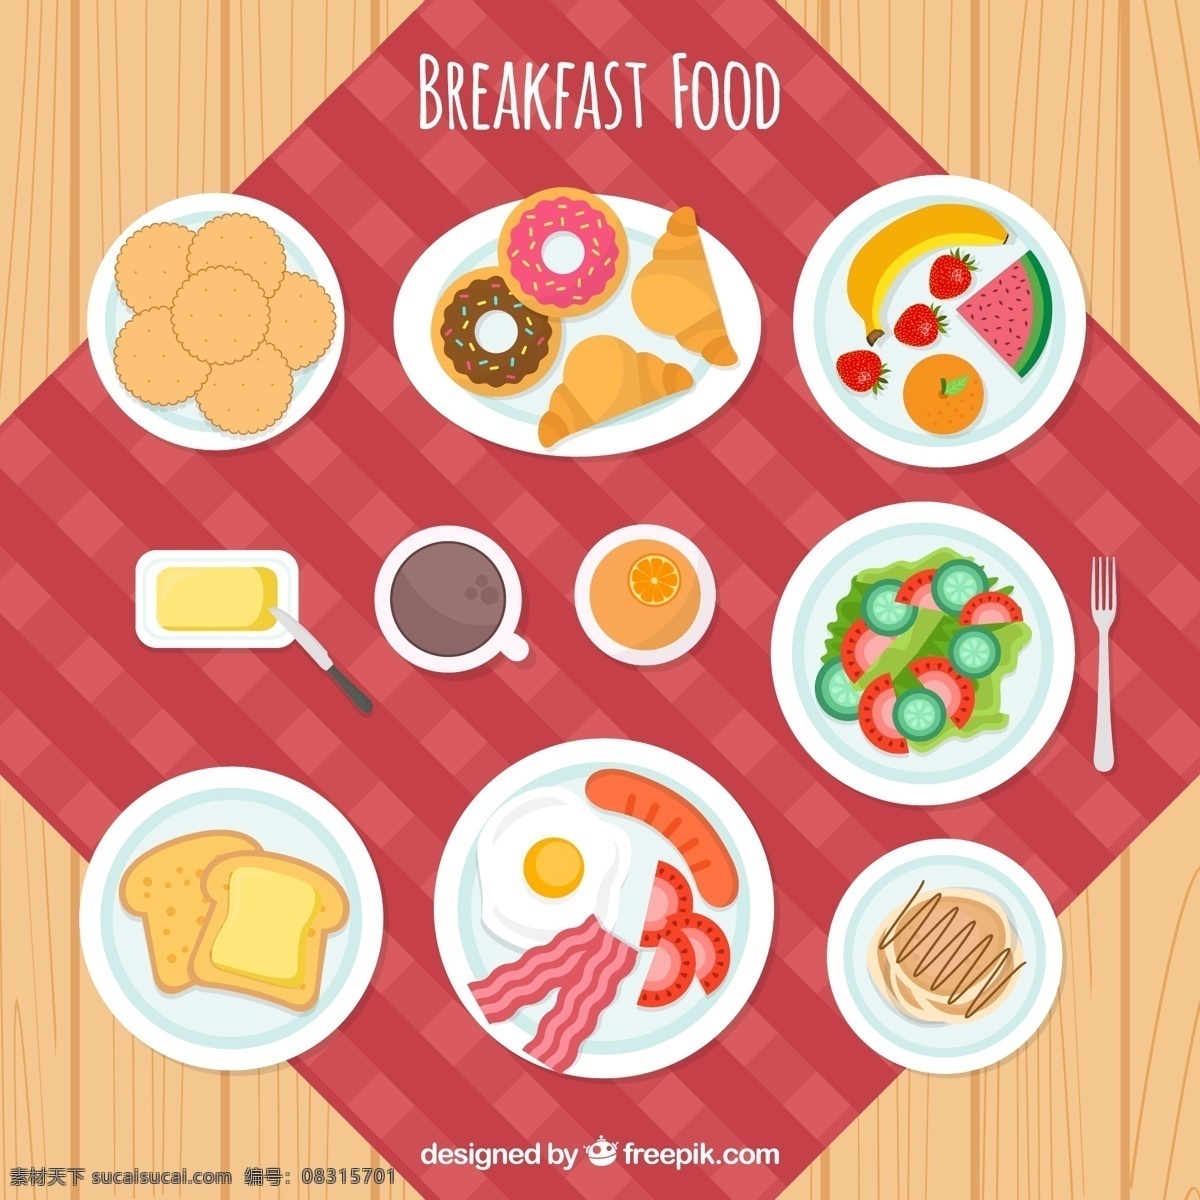 桌上 满满 早餐 背景 食品 咖啡 面包 桌子 水果 颜色 墙纸 鸡蛋 丰富的背景 吃 沙拉 早晨 烤面包